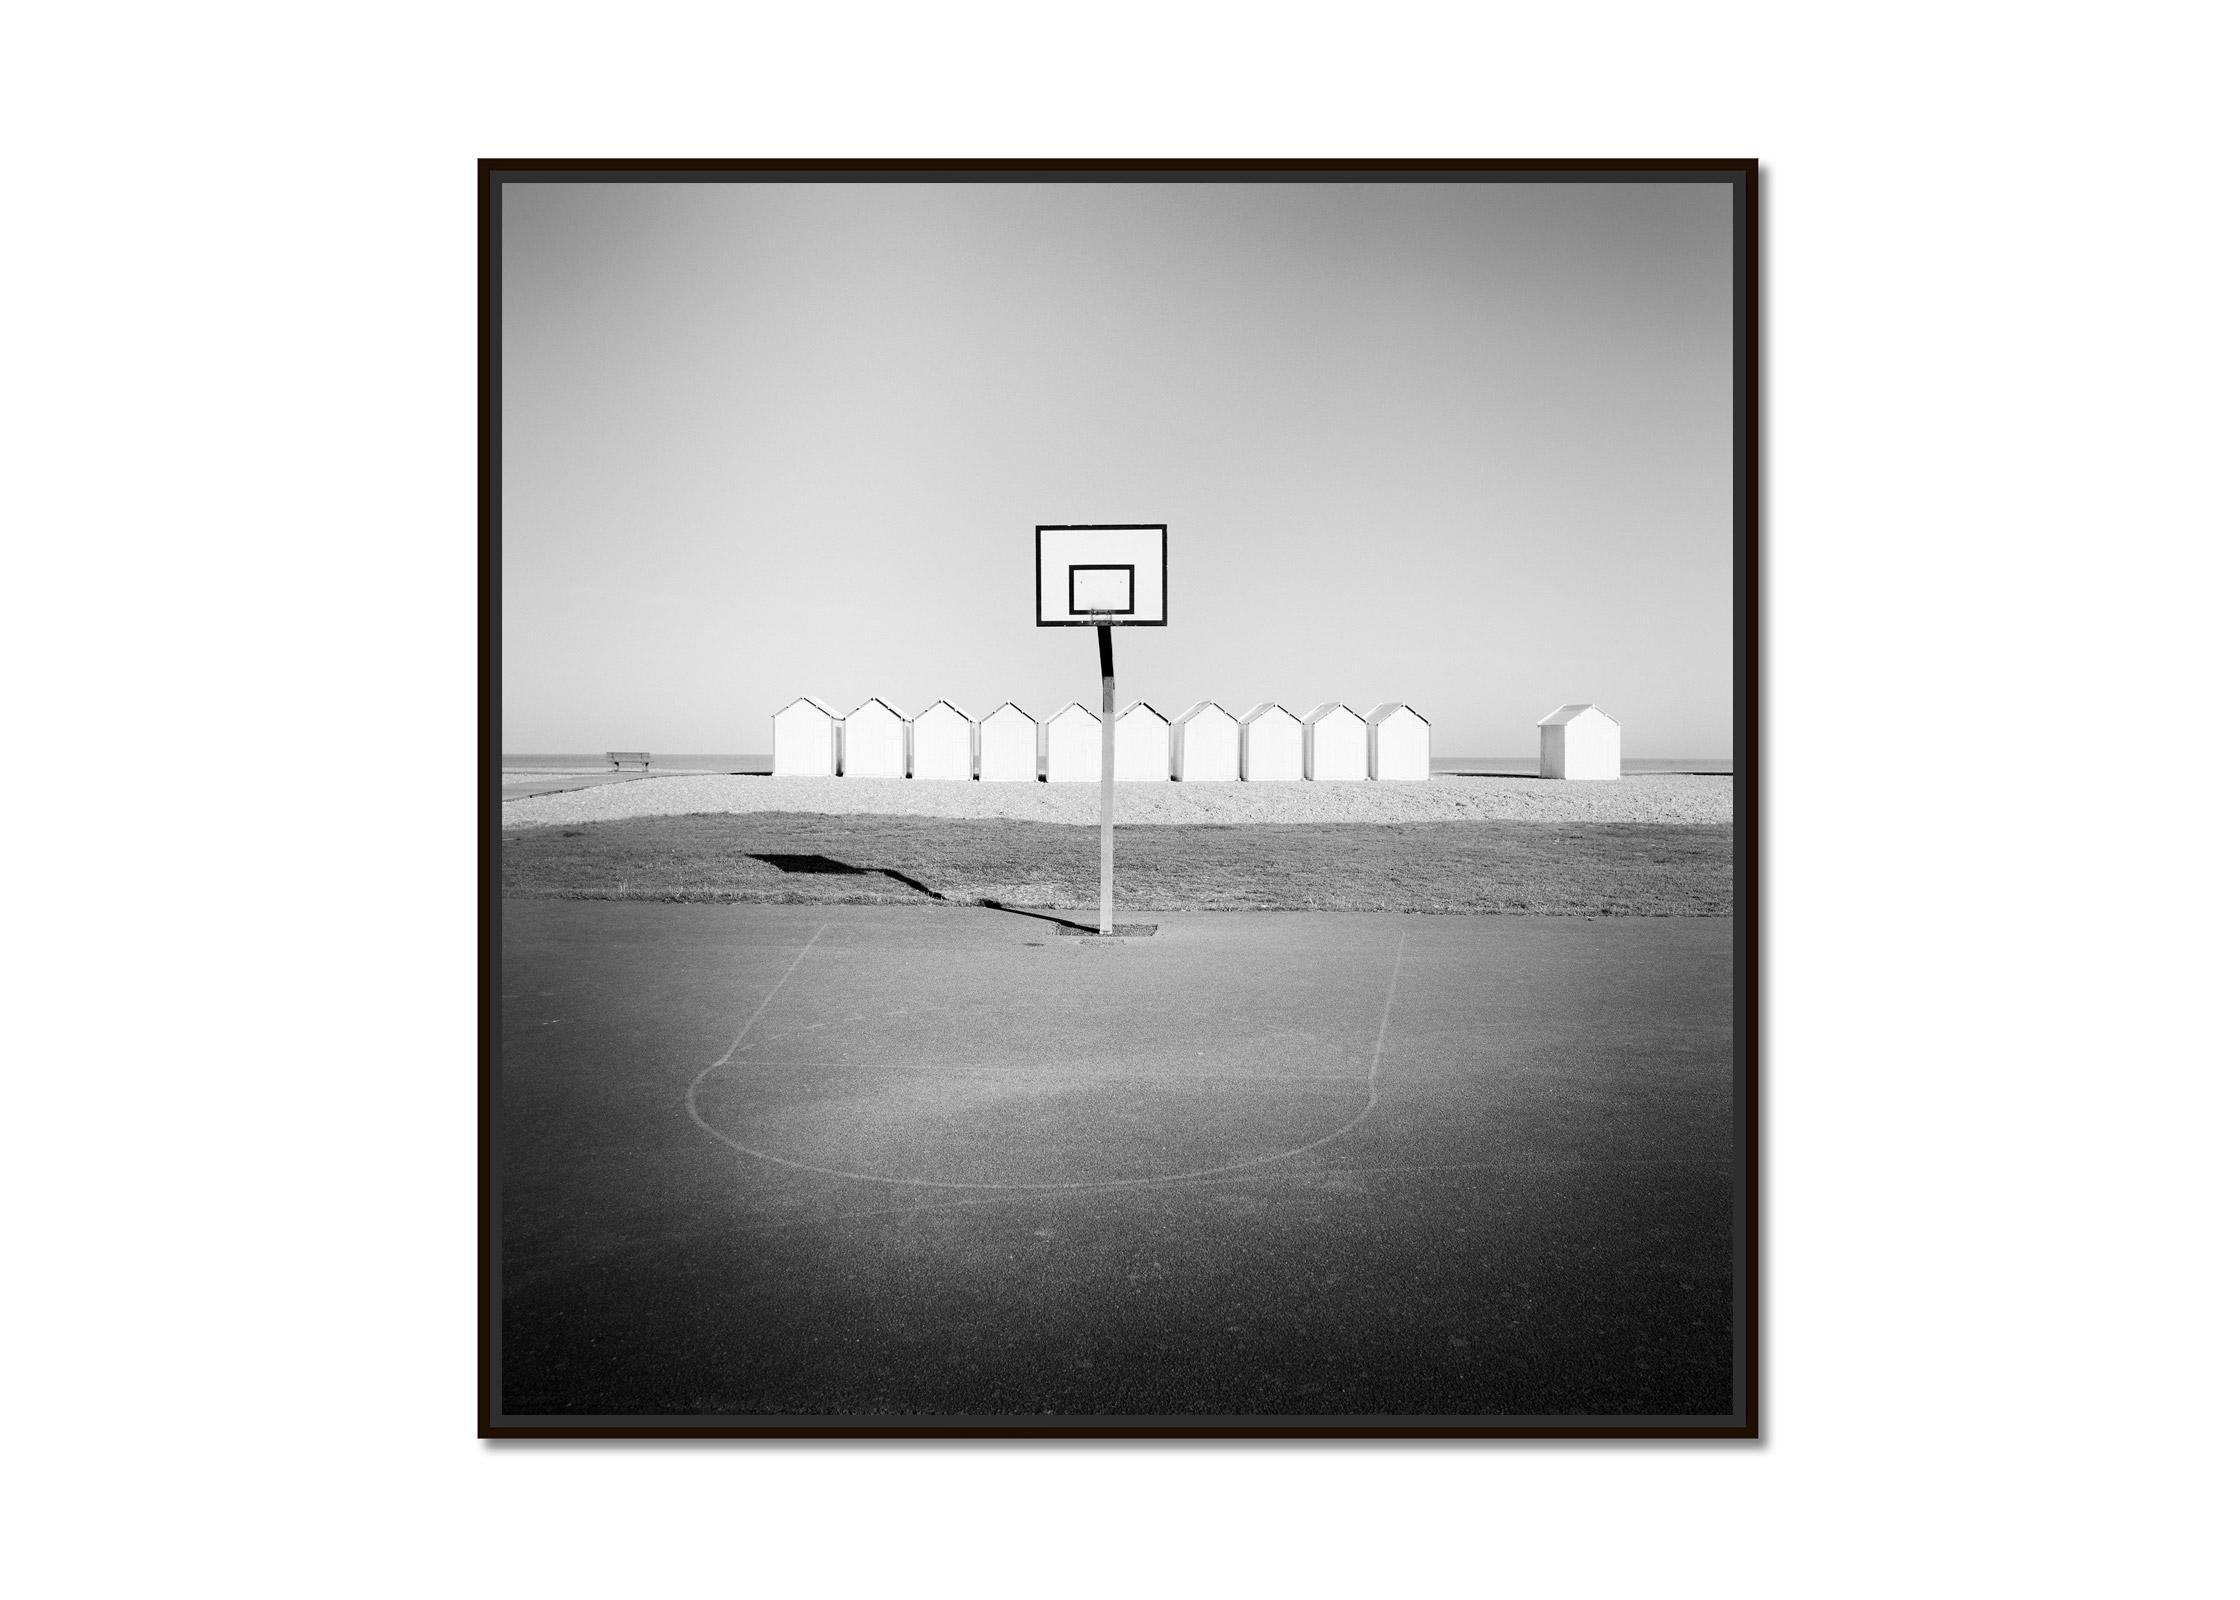 Playground, huttes de plage, basket-ball, France, photographies de paysages en noir et blanc - Photograph de Gerald Berghammer